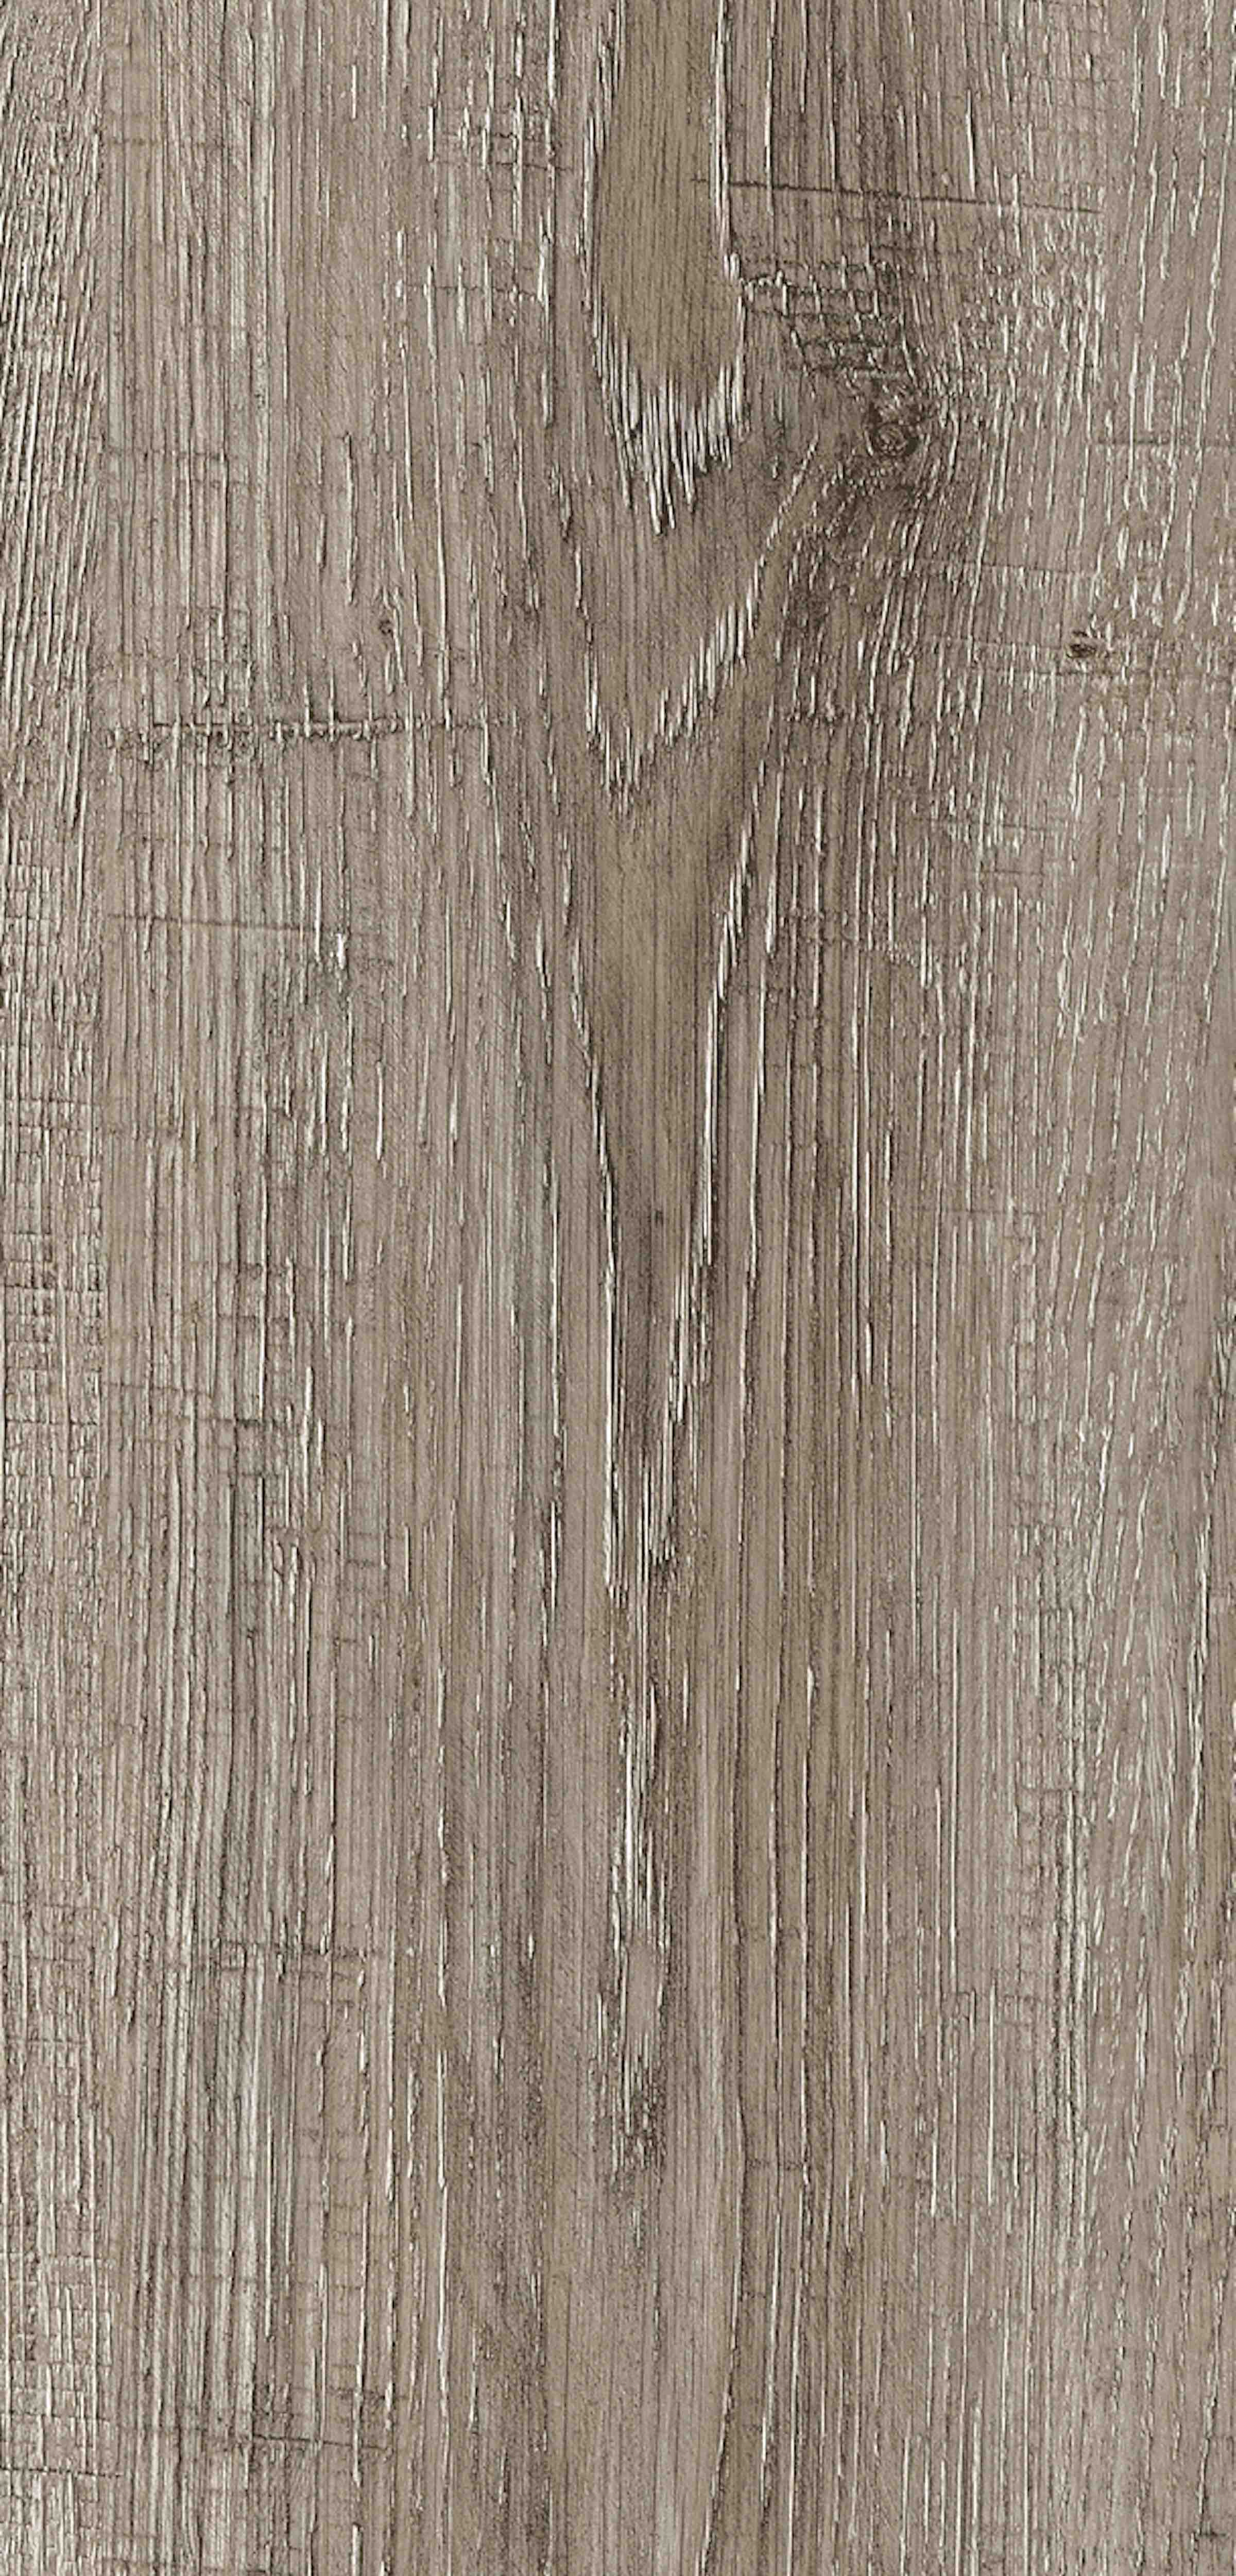 Rappórt | Dockyard Oak, 2947 | Paragon Carpet Tiles | Commercial Carpet Tiles